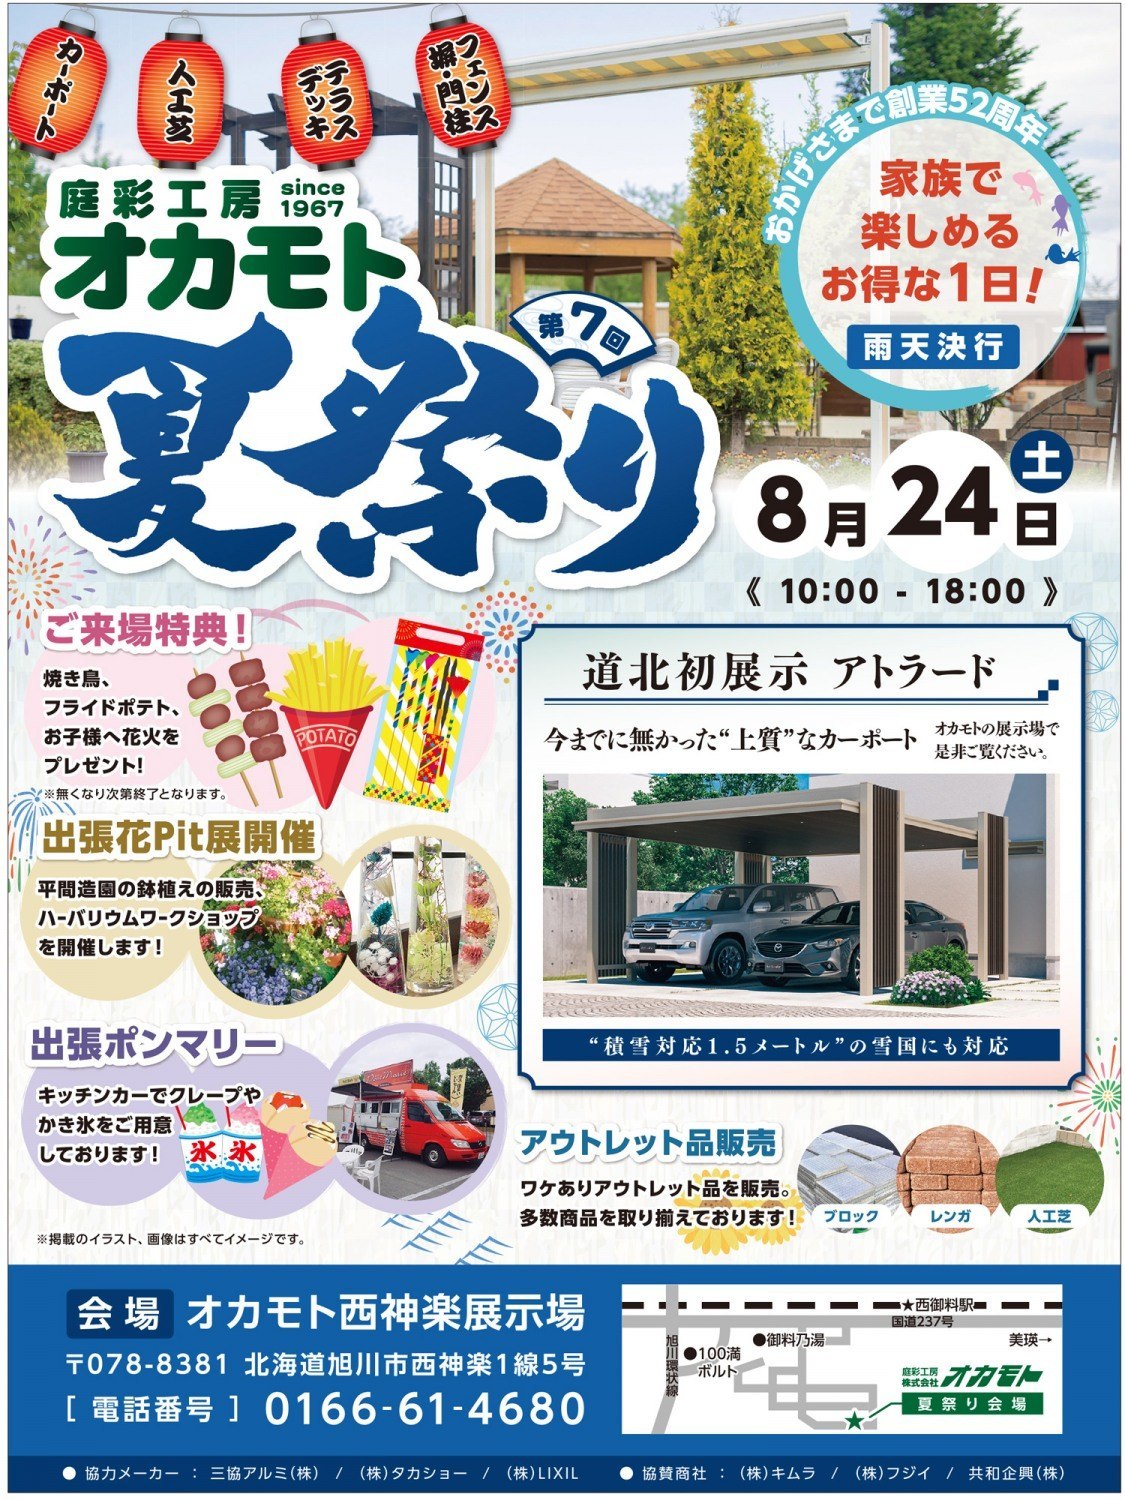 庭彩工房オカモト 夏祭り 旭川市西神楽 イベント ライナーウェブ